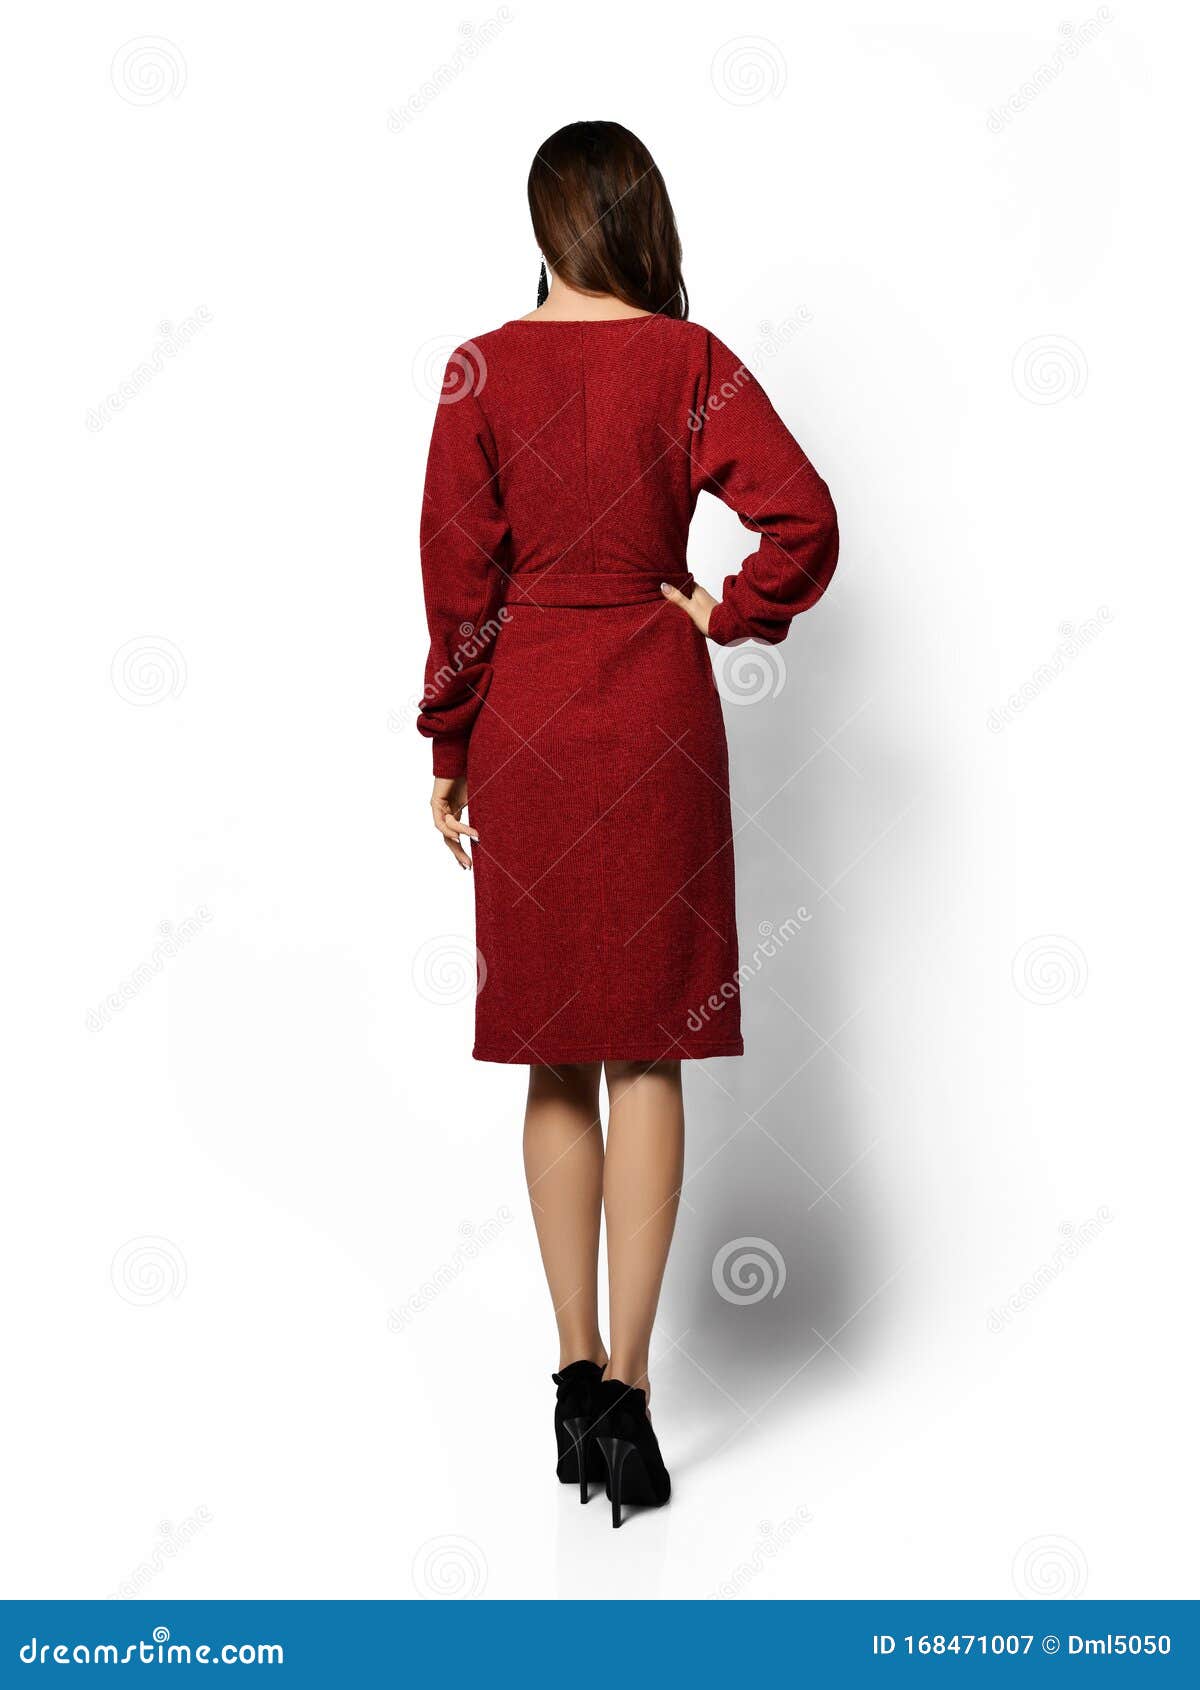 Joven Mujer Hermosa Posando En Nueva Forma Informal Morado Vestido Rojo De Invierno Alegre Sonriendo Caminando Imagen de archivo - Imagen de completo, maquillaje: